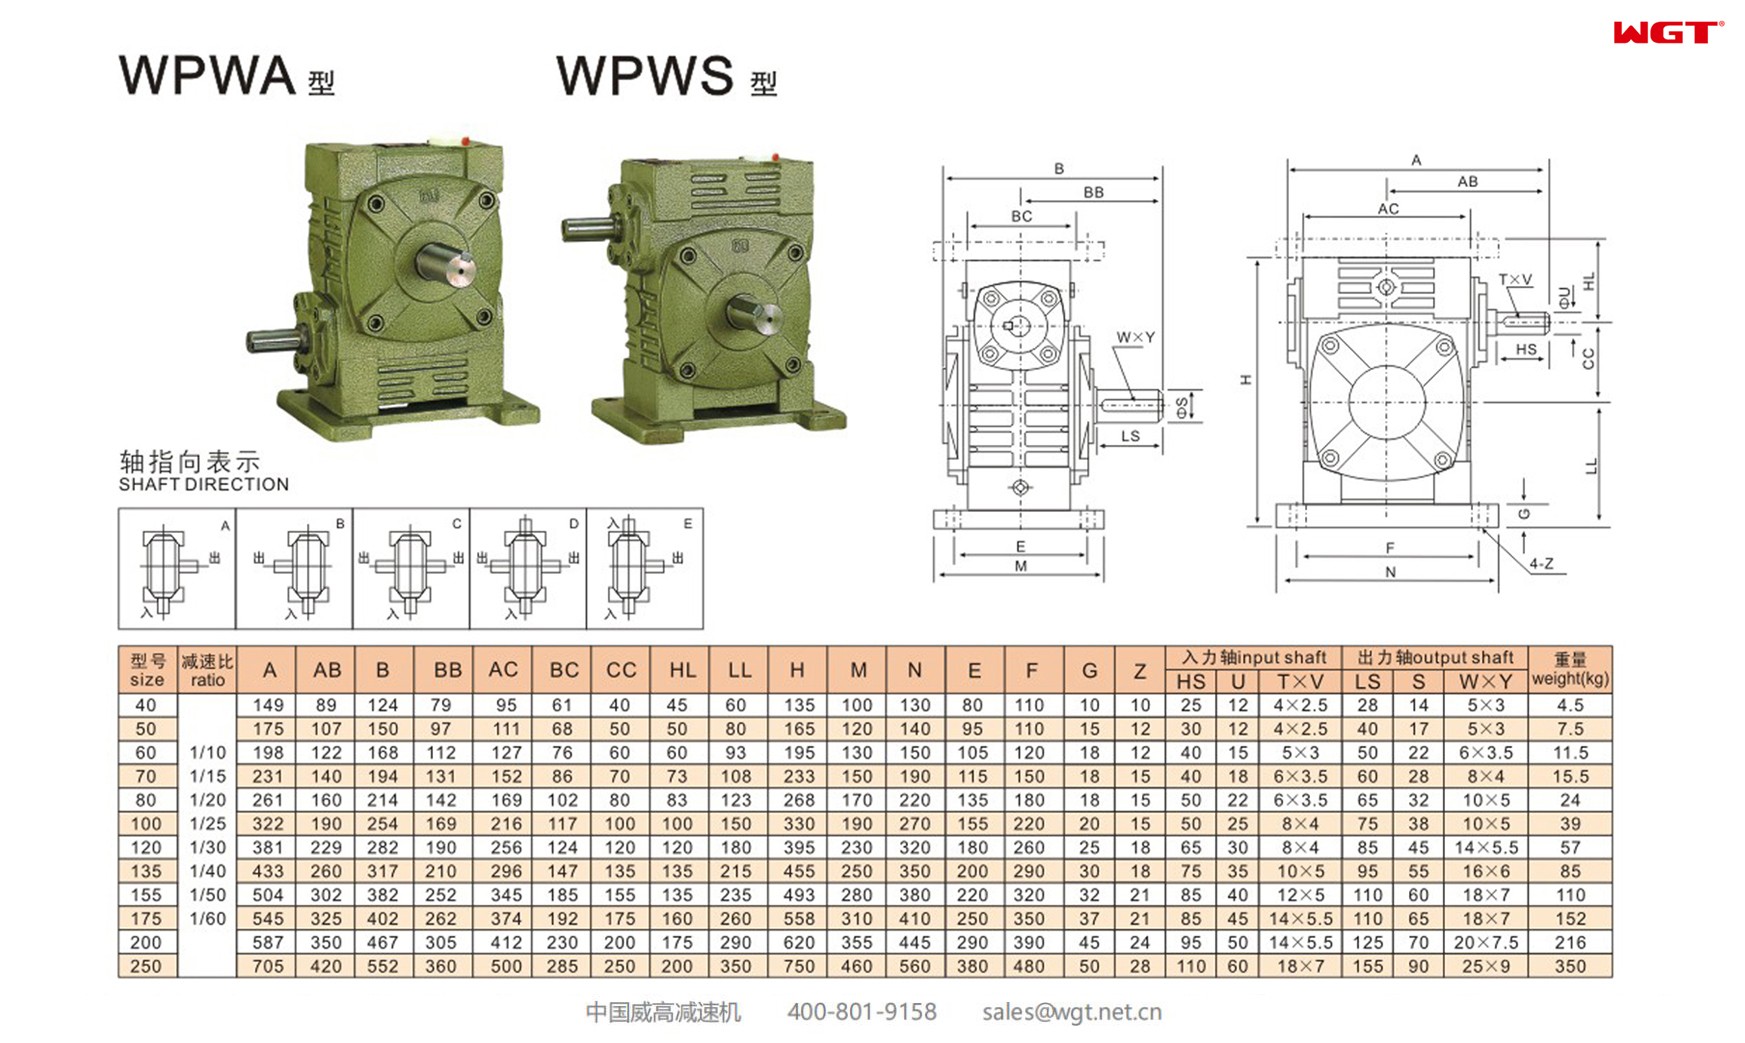 WPWA200 worm gear reducer universal speed reducer